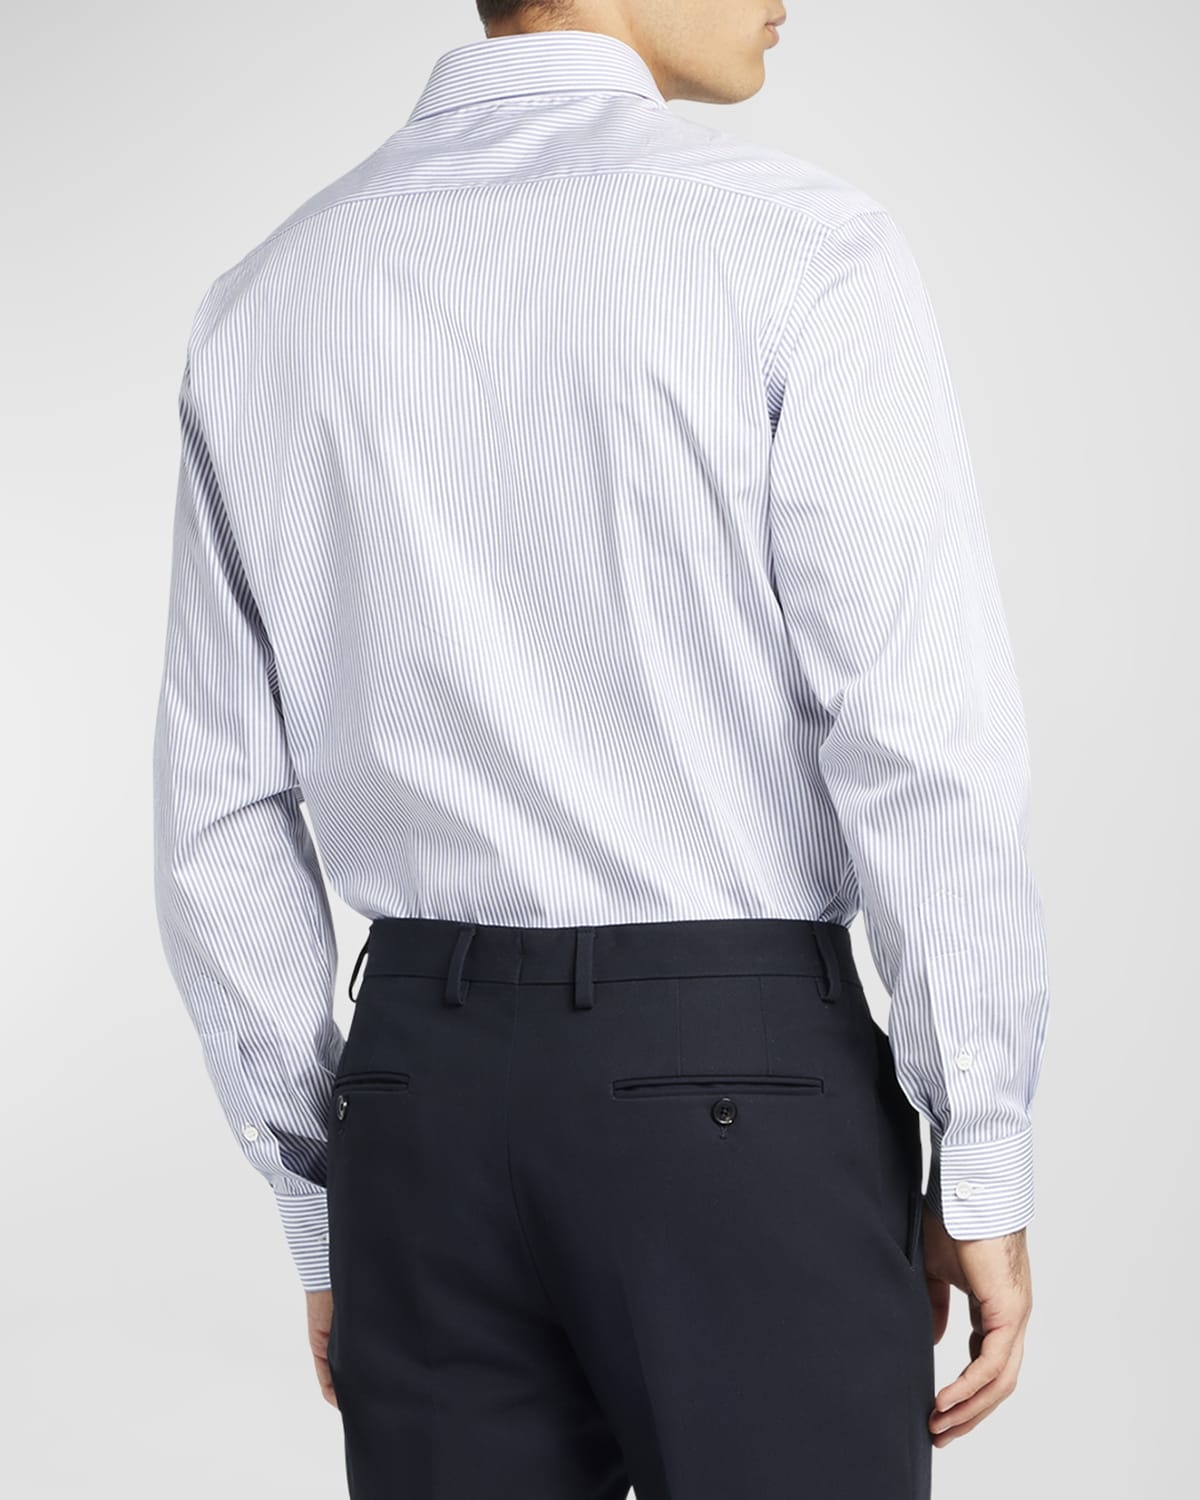 Men's Cotton Micro-Stripe Dress Shirt - 6